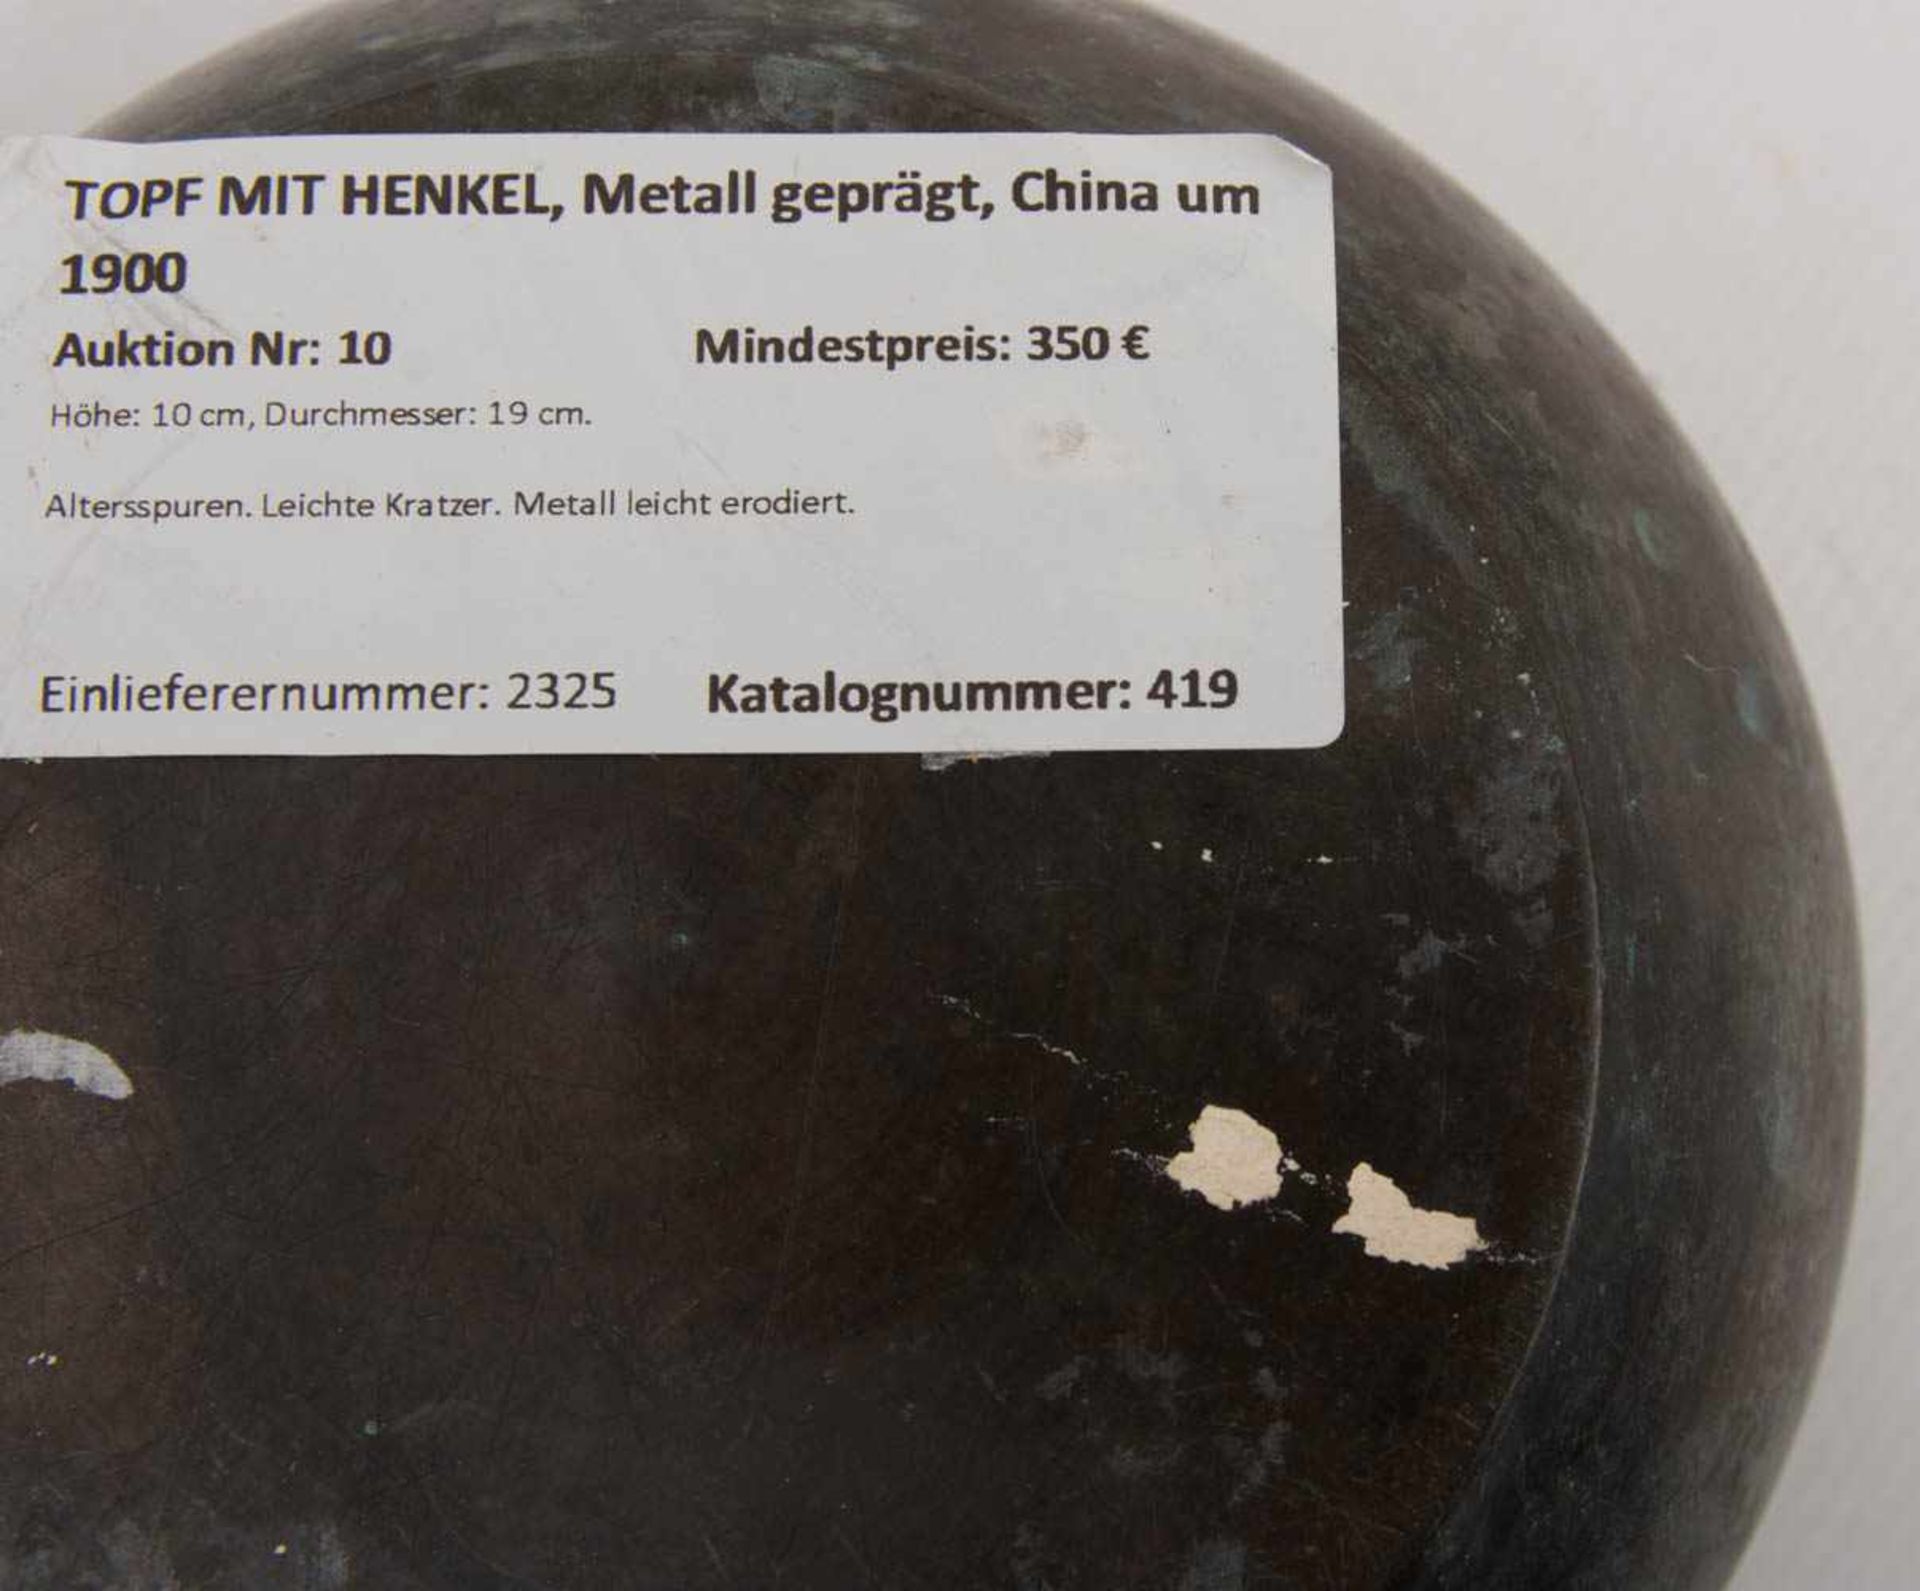 TOPF MIT HENKEL, Metall geprägt, China um 1900Höhe: 10 cm, Durchmesser: 19 cm.Altersspuren. - Bild 7 aus 7